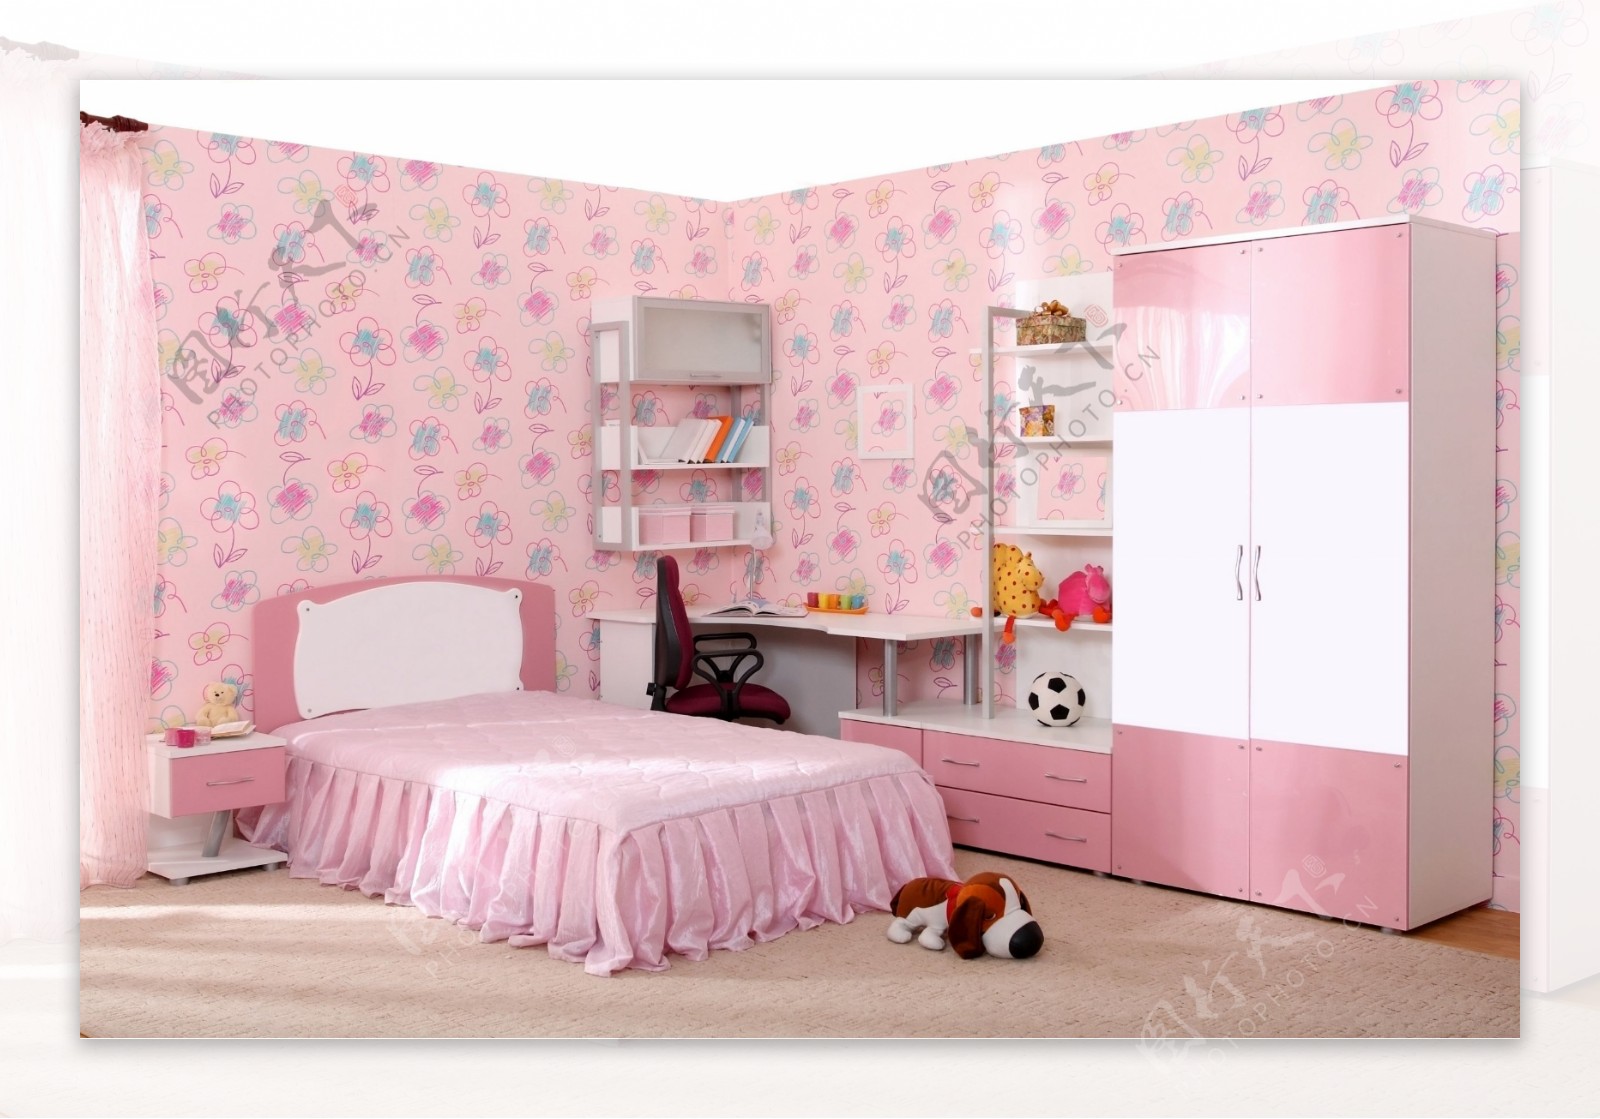 粉色主题卧室设计